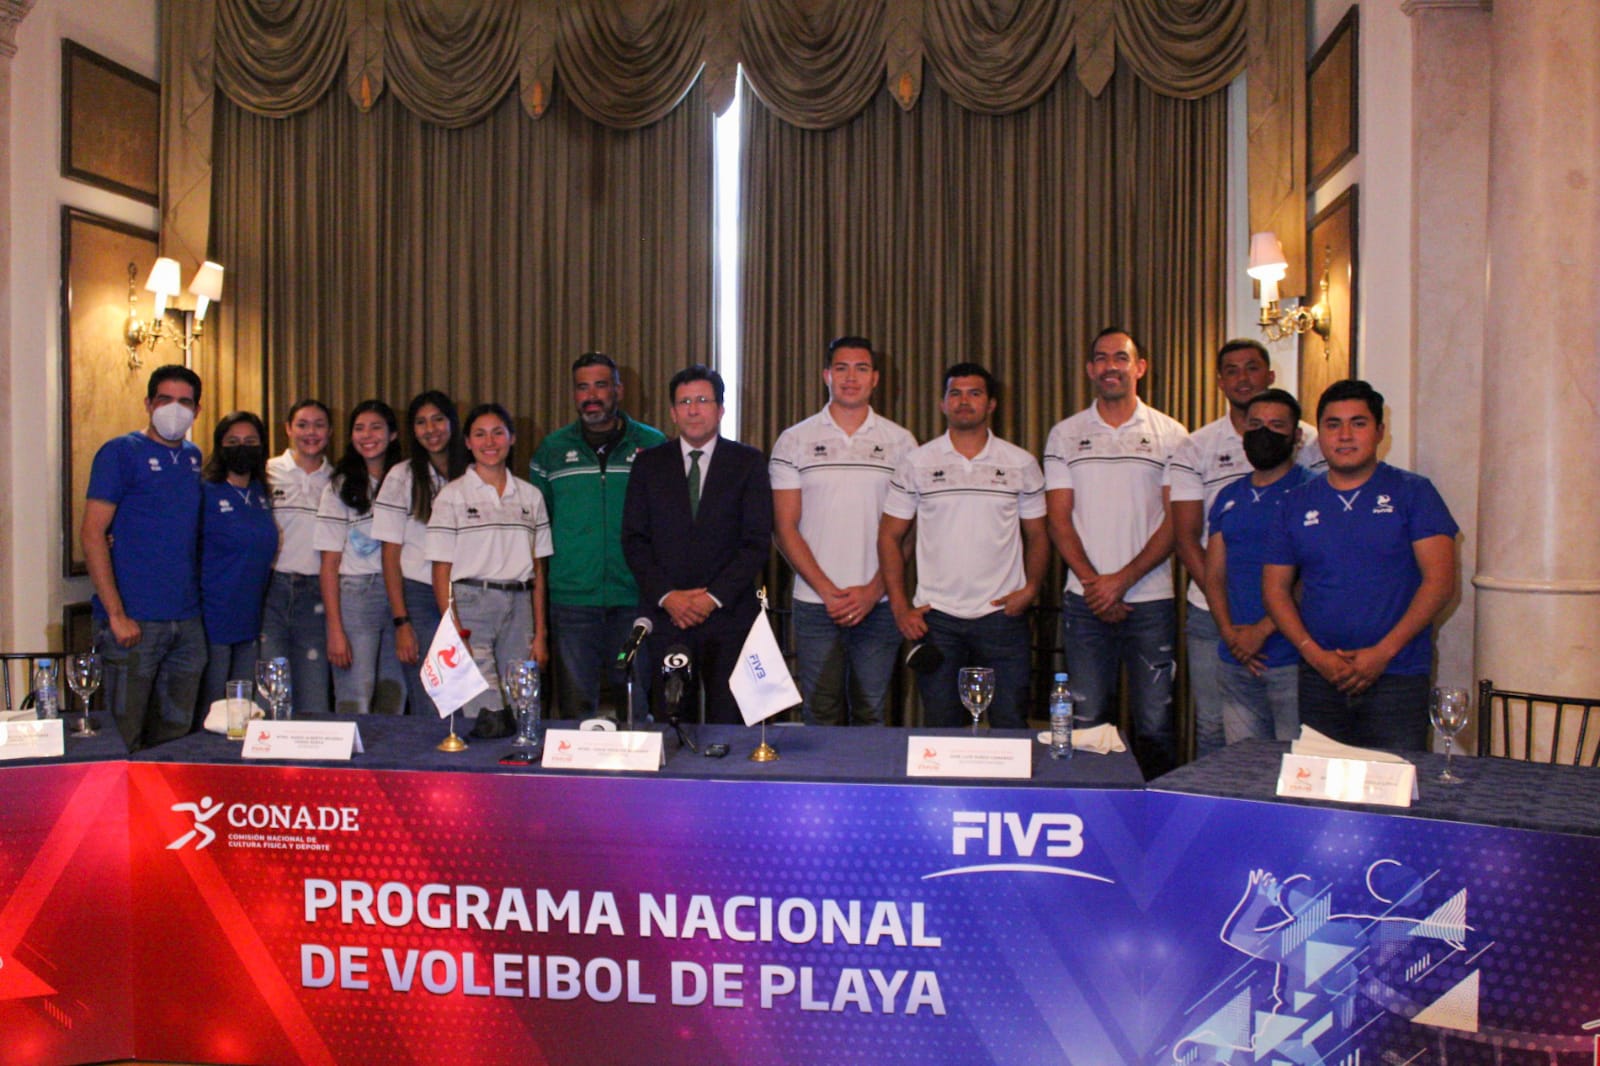 Presenta FMVB Programa Nacional de Voleibol de Playa rumbo a París 2024 y LA 2028